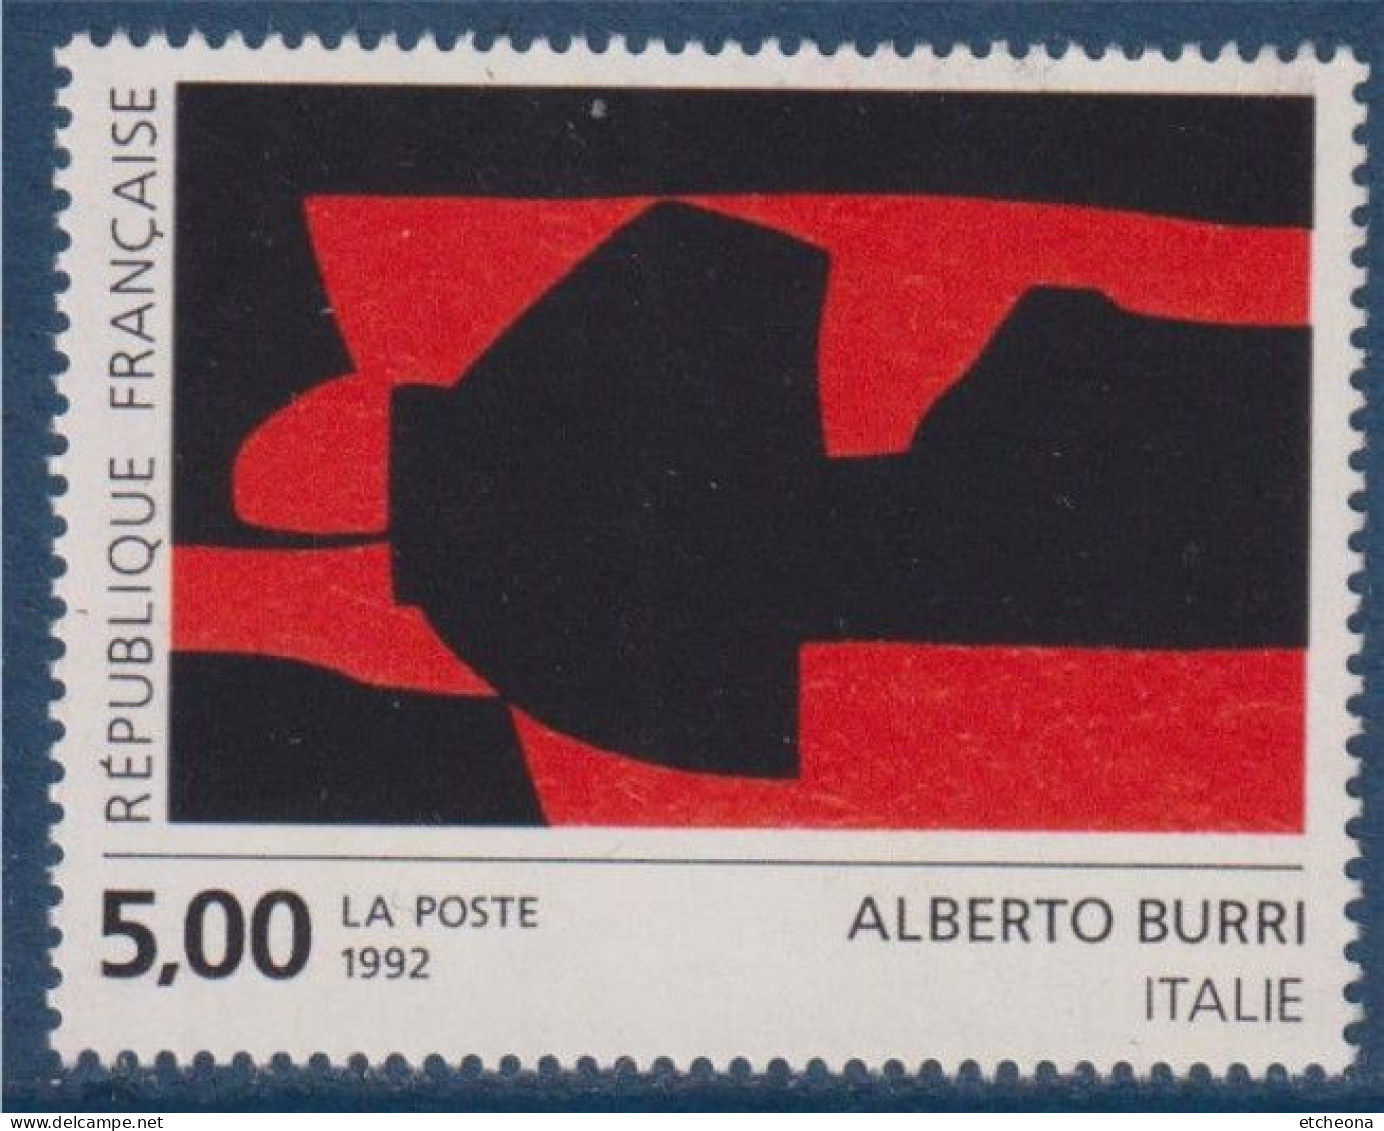 Série Européenne D'art Contemporain "Création Pour La Poste" D'Alberto Burri N°2780 Neuf Italie - Ongebruikt